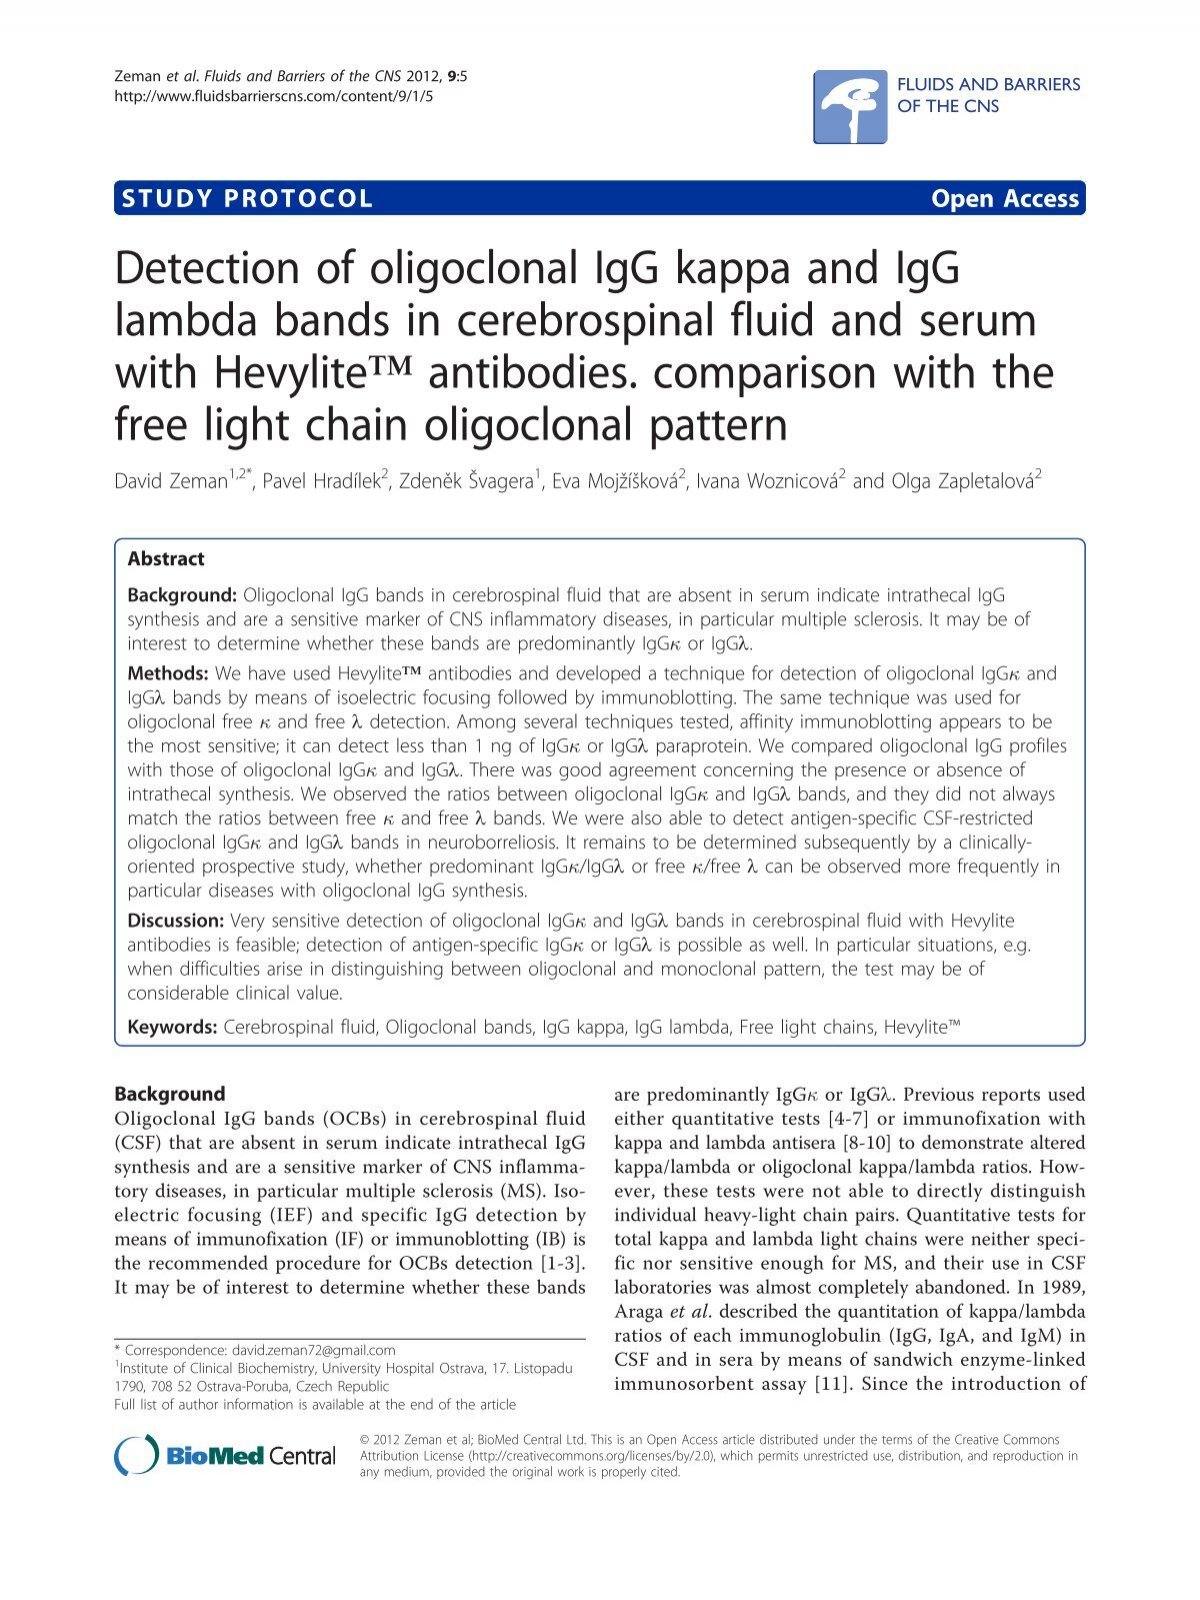 Detection of oligoclonal IgG kappa and IgG lambda bands in ...